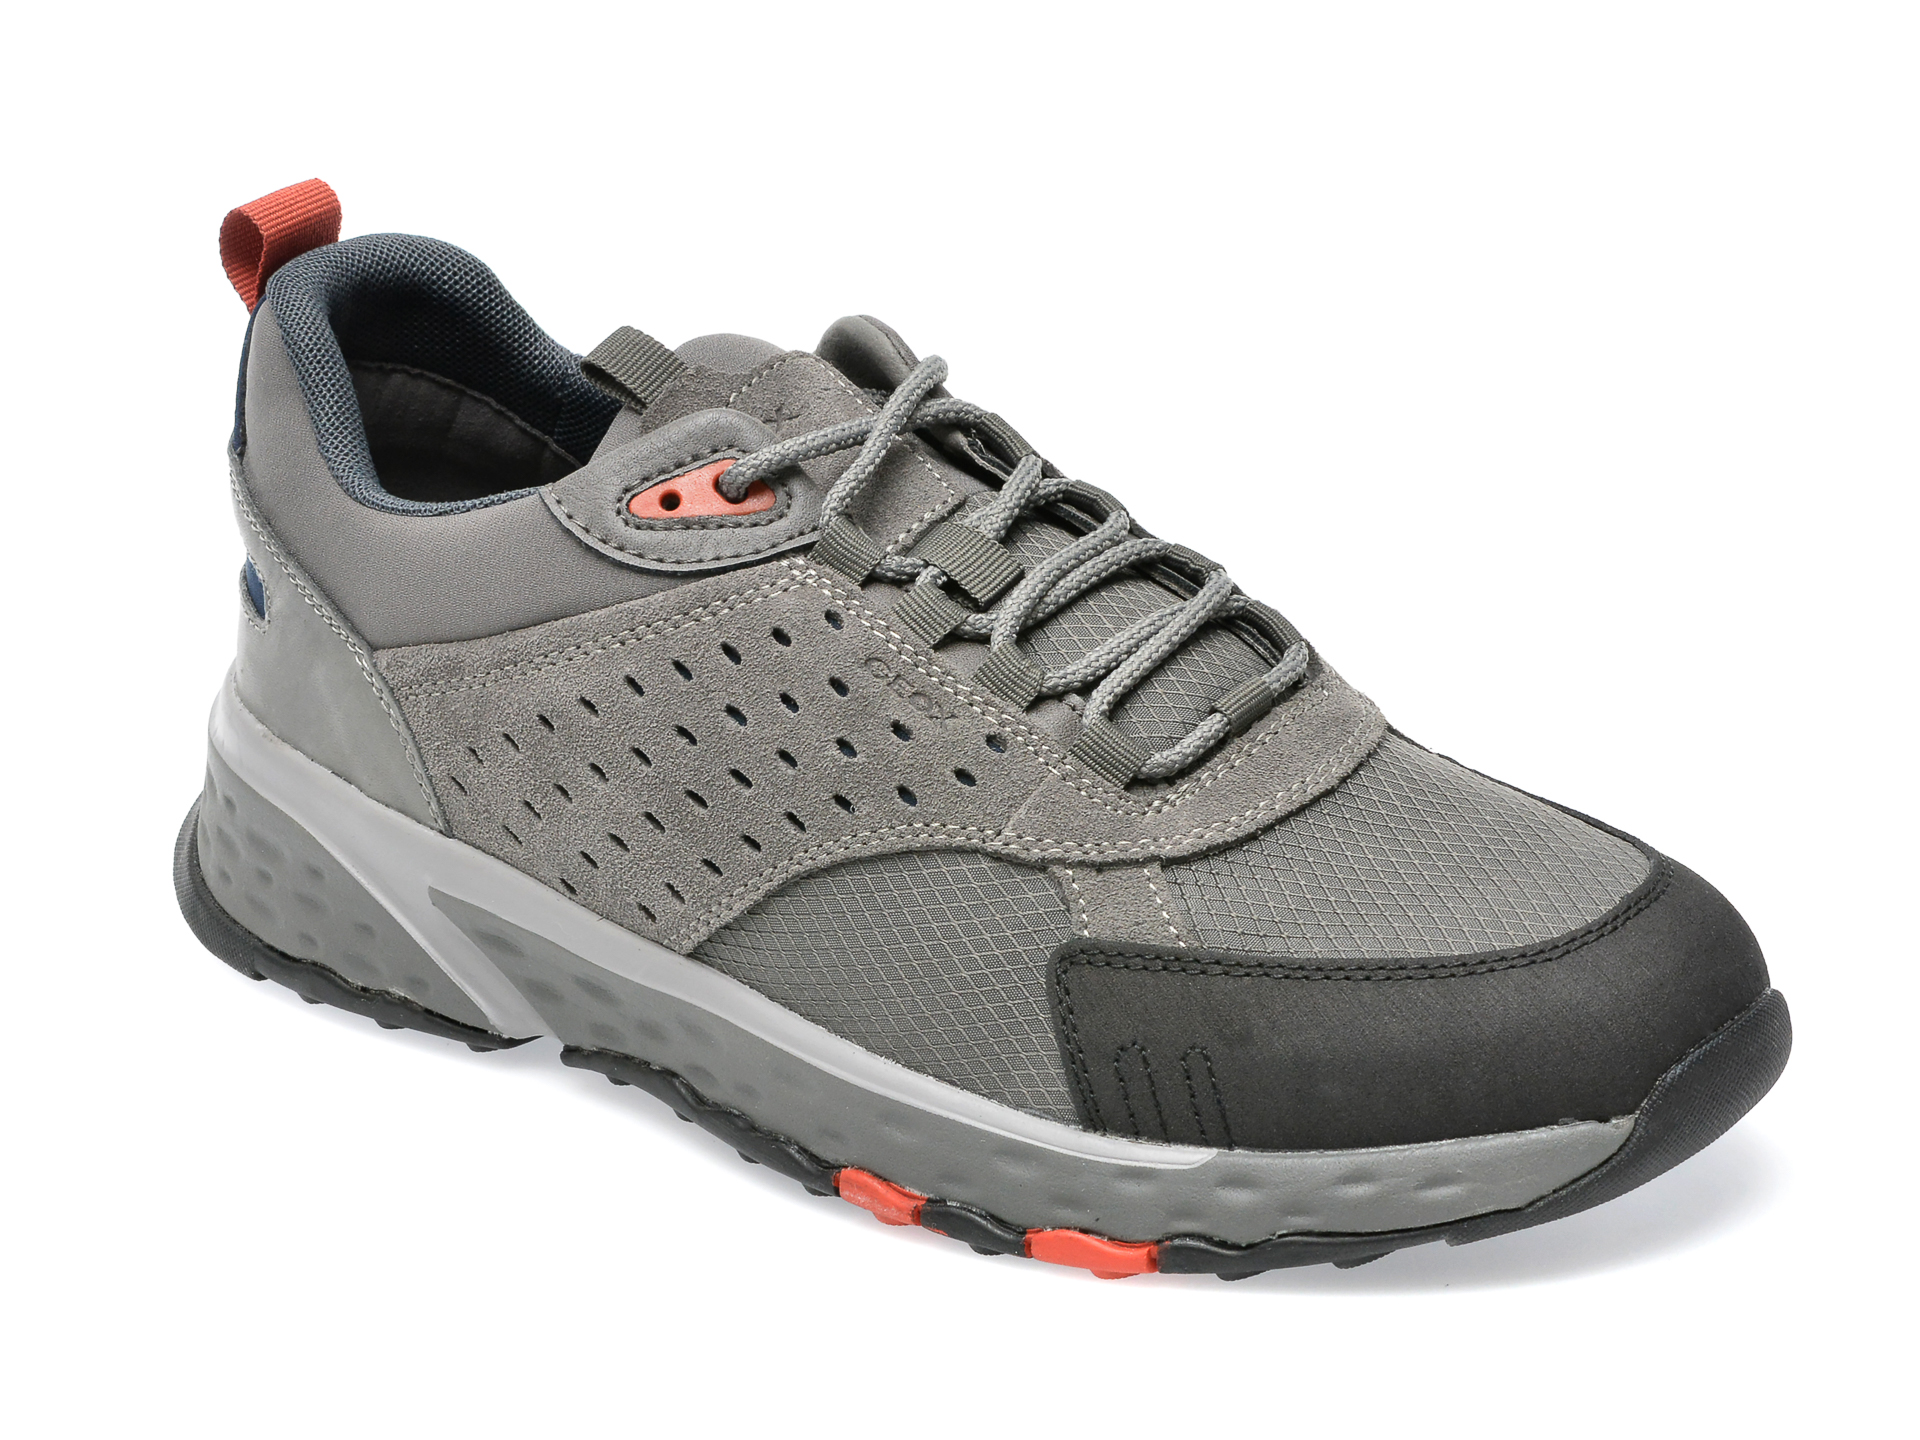 Pantofi sport GEOX gri, U25ECA, din material textil si piele naturala Geox